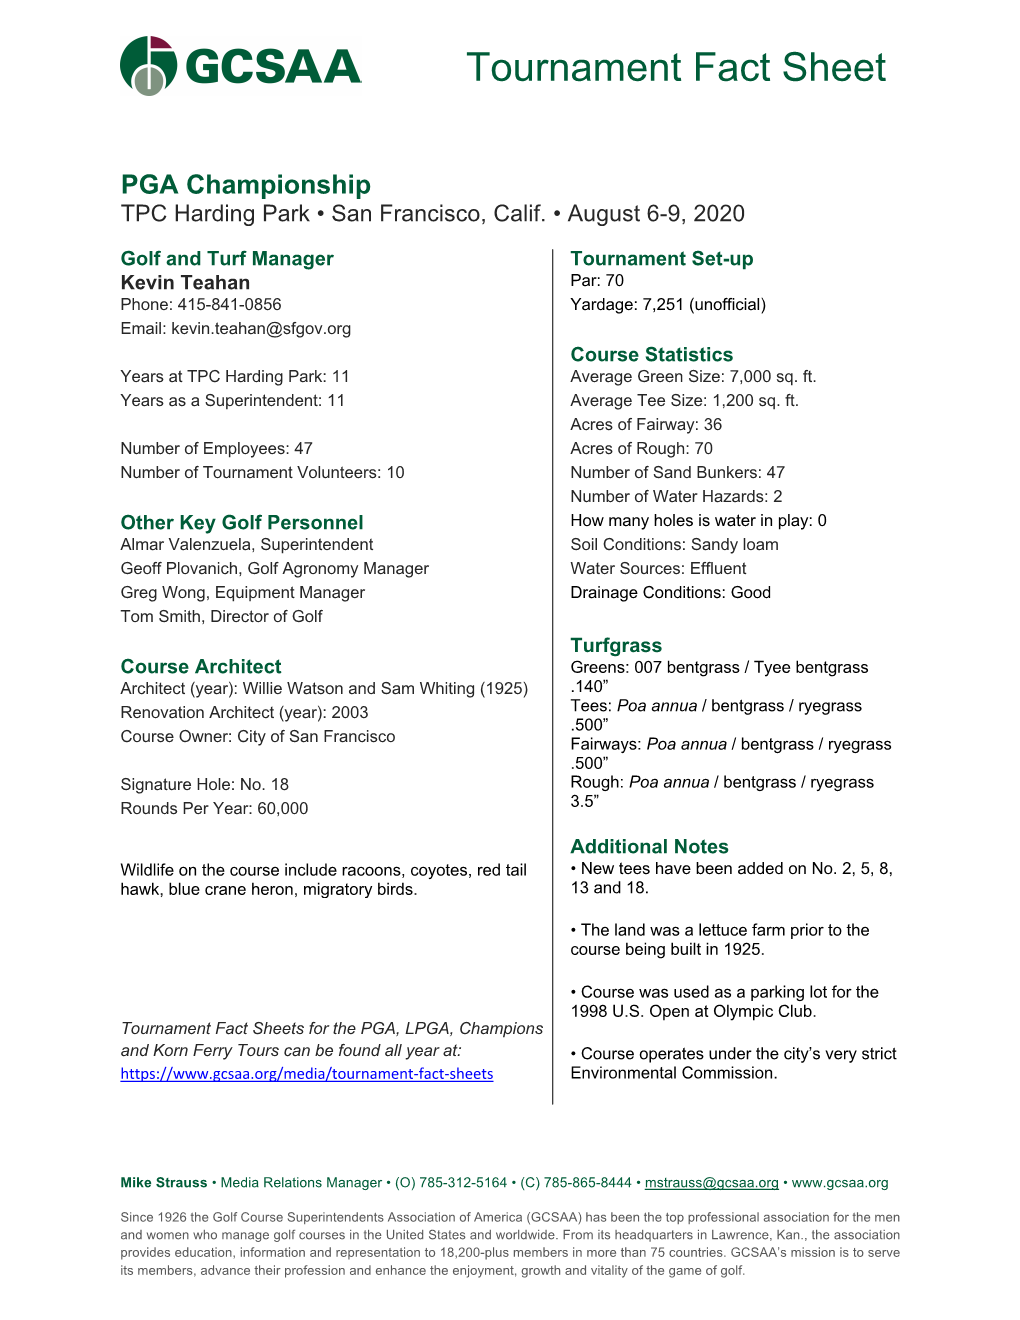 8.06 PGA Championship (PGA)